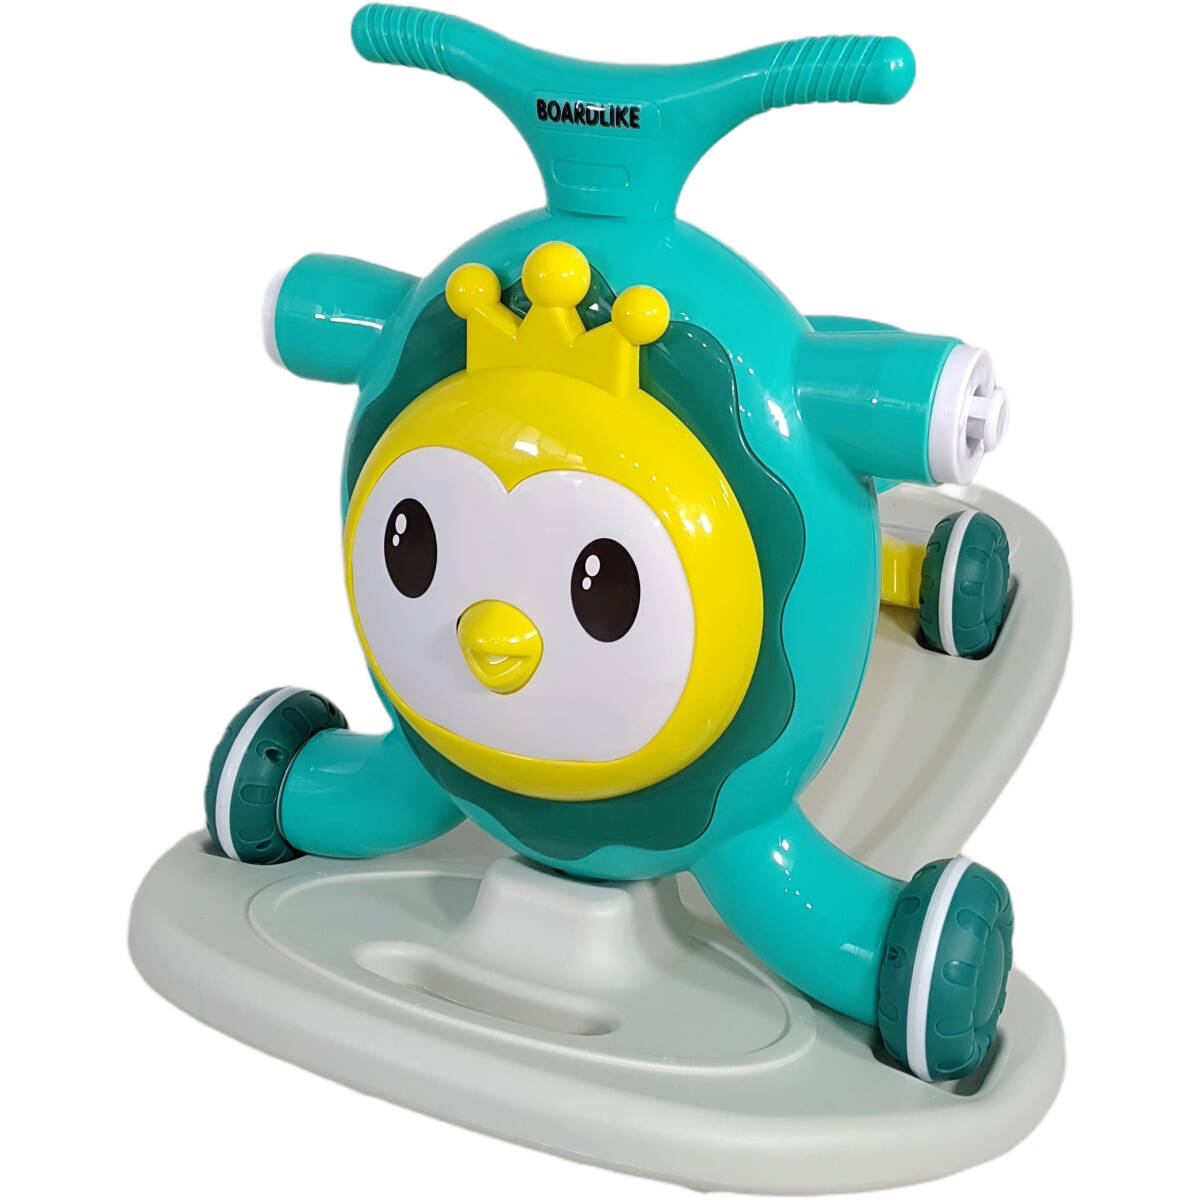  зеленый #80% off . быстрое решение,4WAY# первый в Японии #10 шт. ограничение # ходунки # baby War машина # панель Like # самокат # кресло-качалка -# деревянная лошадь 